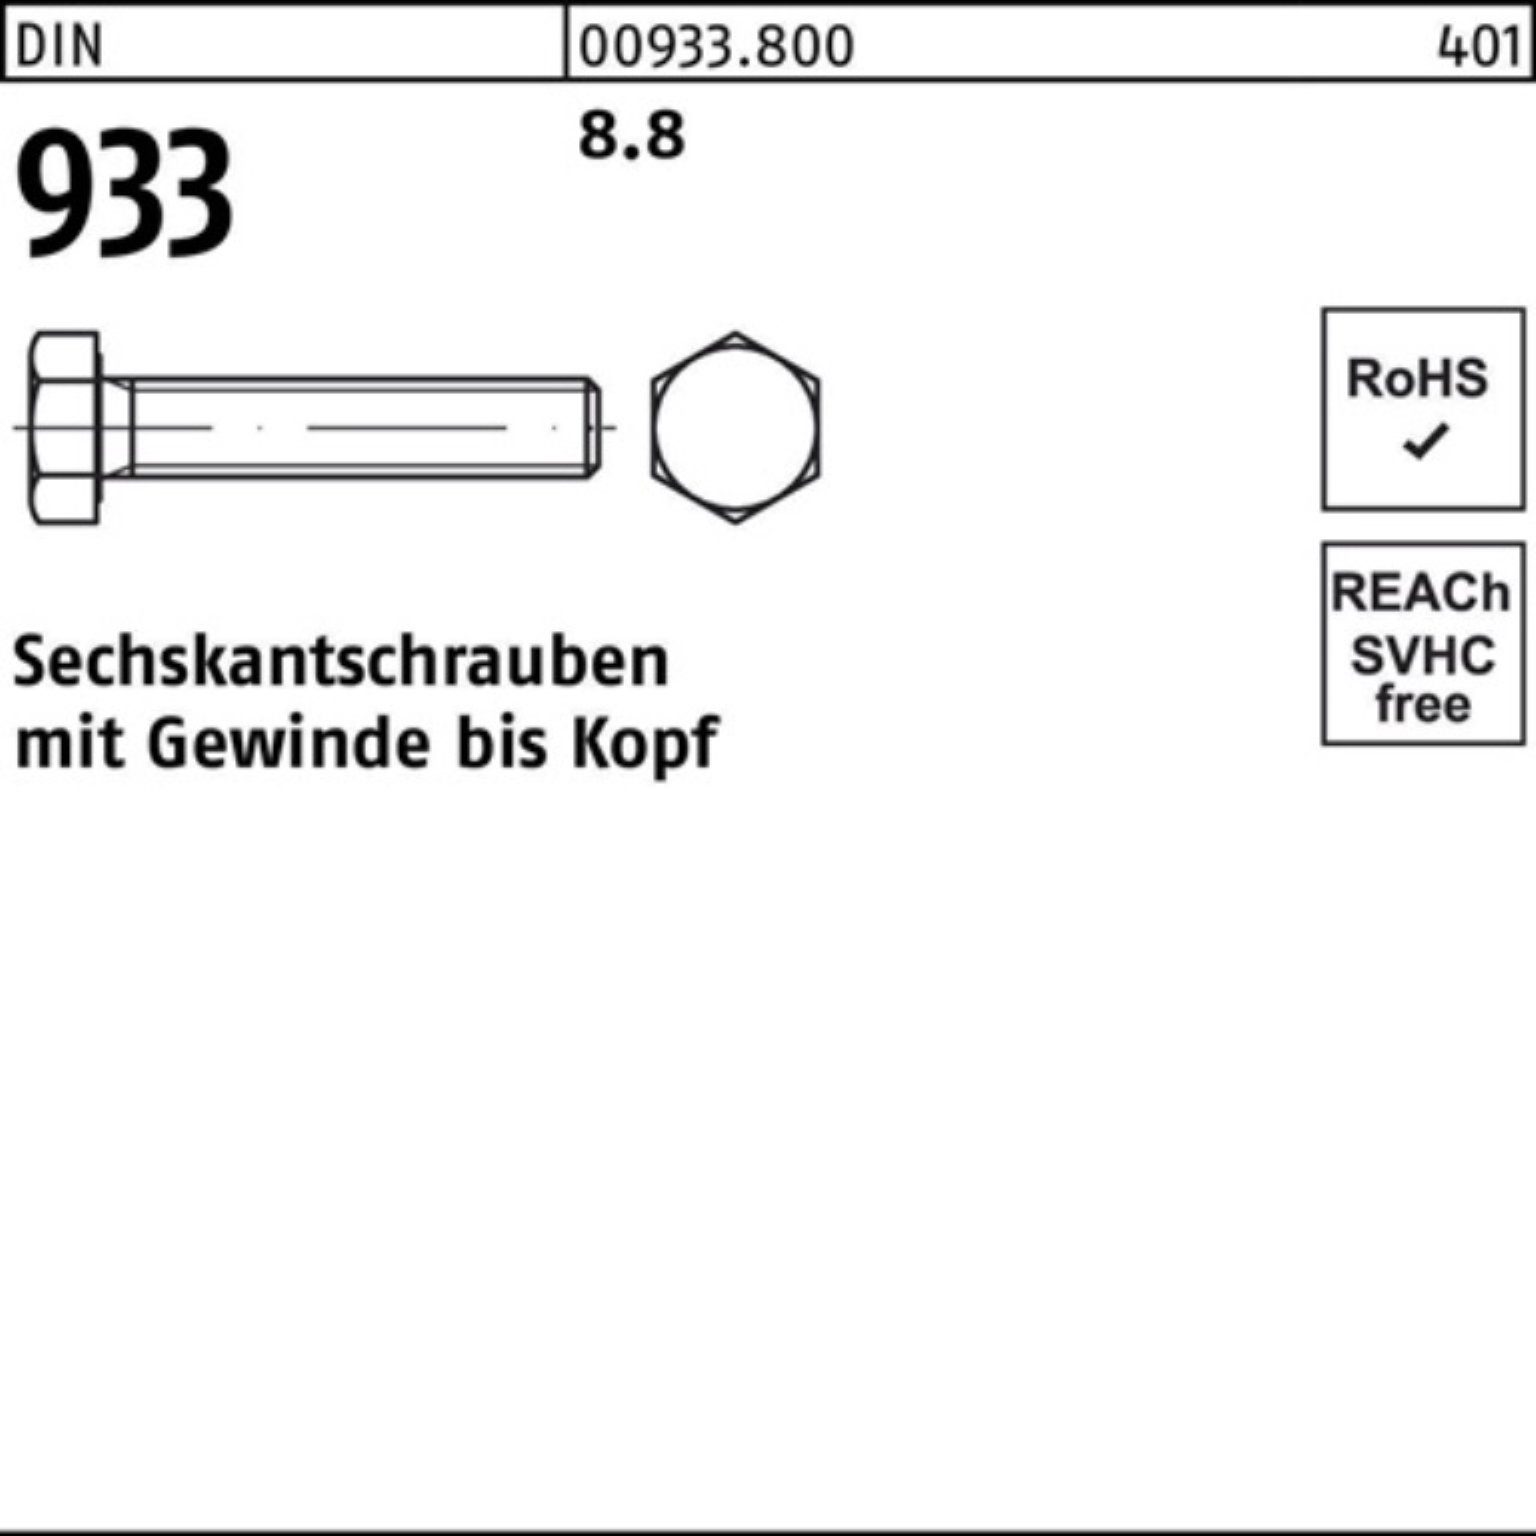 DIN 25 DIN Stück 65 Sechskantschraube 100er 8.8 Pack Reyher Sechskantschraube 933 933 M24x VG